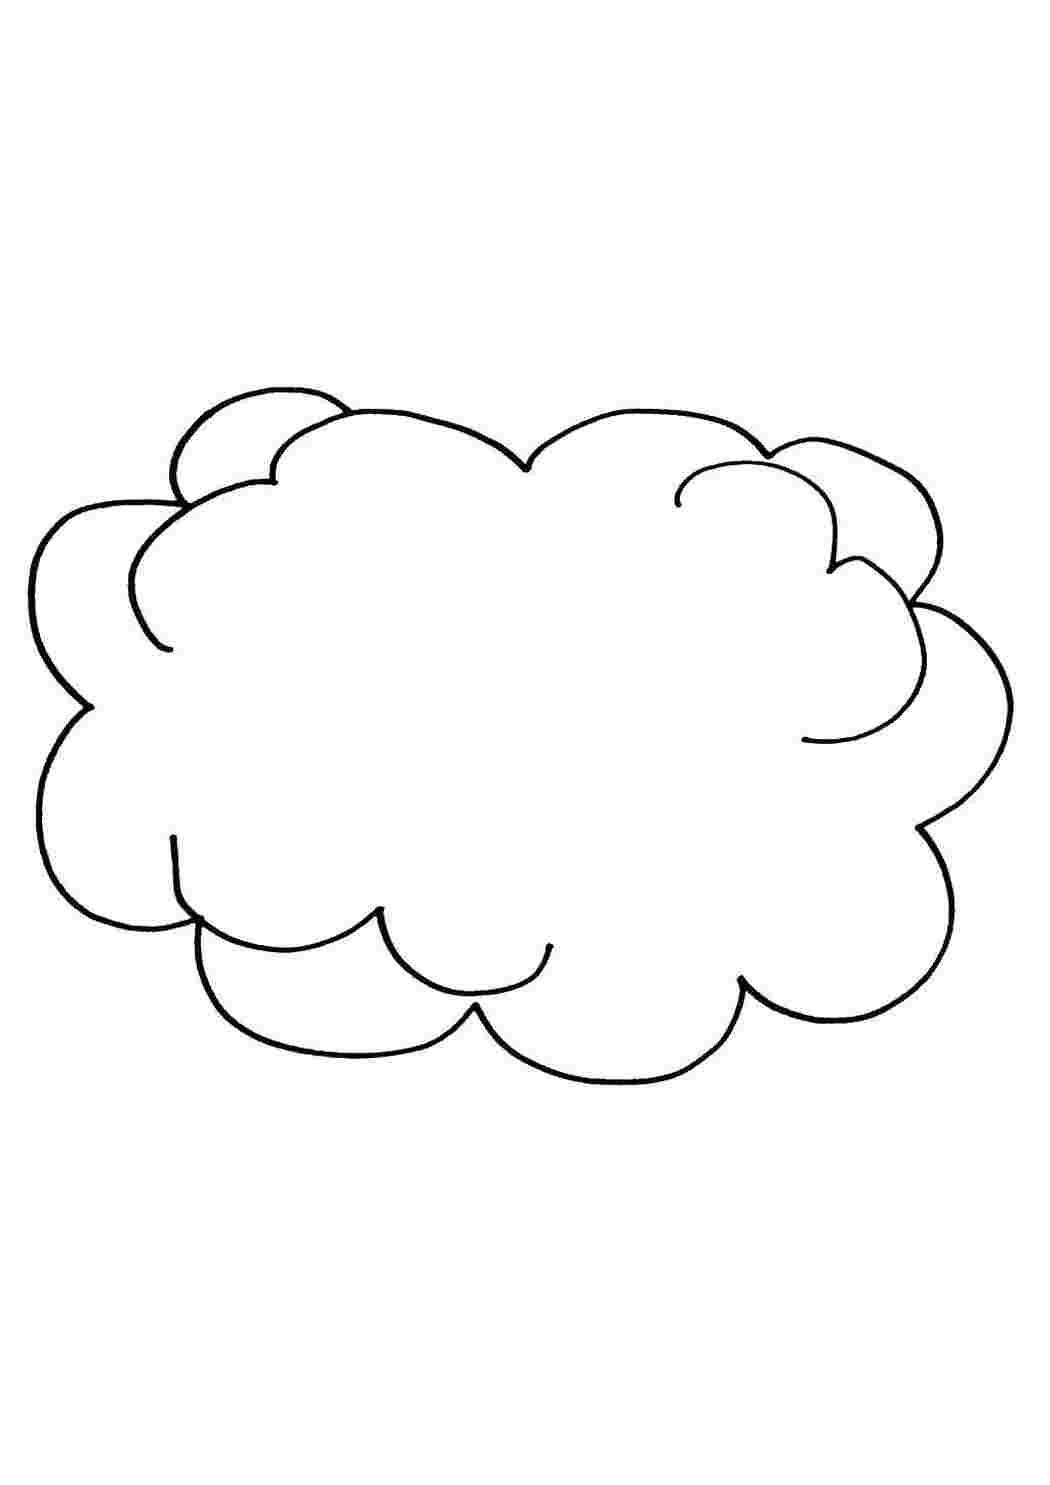 Раскраски Облака. Лучшие картинки для детей скачивайте и распечатывайте